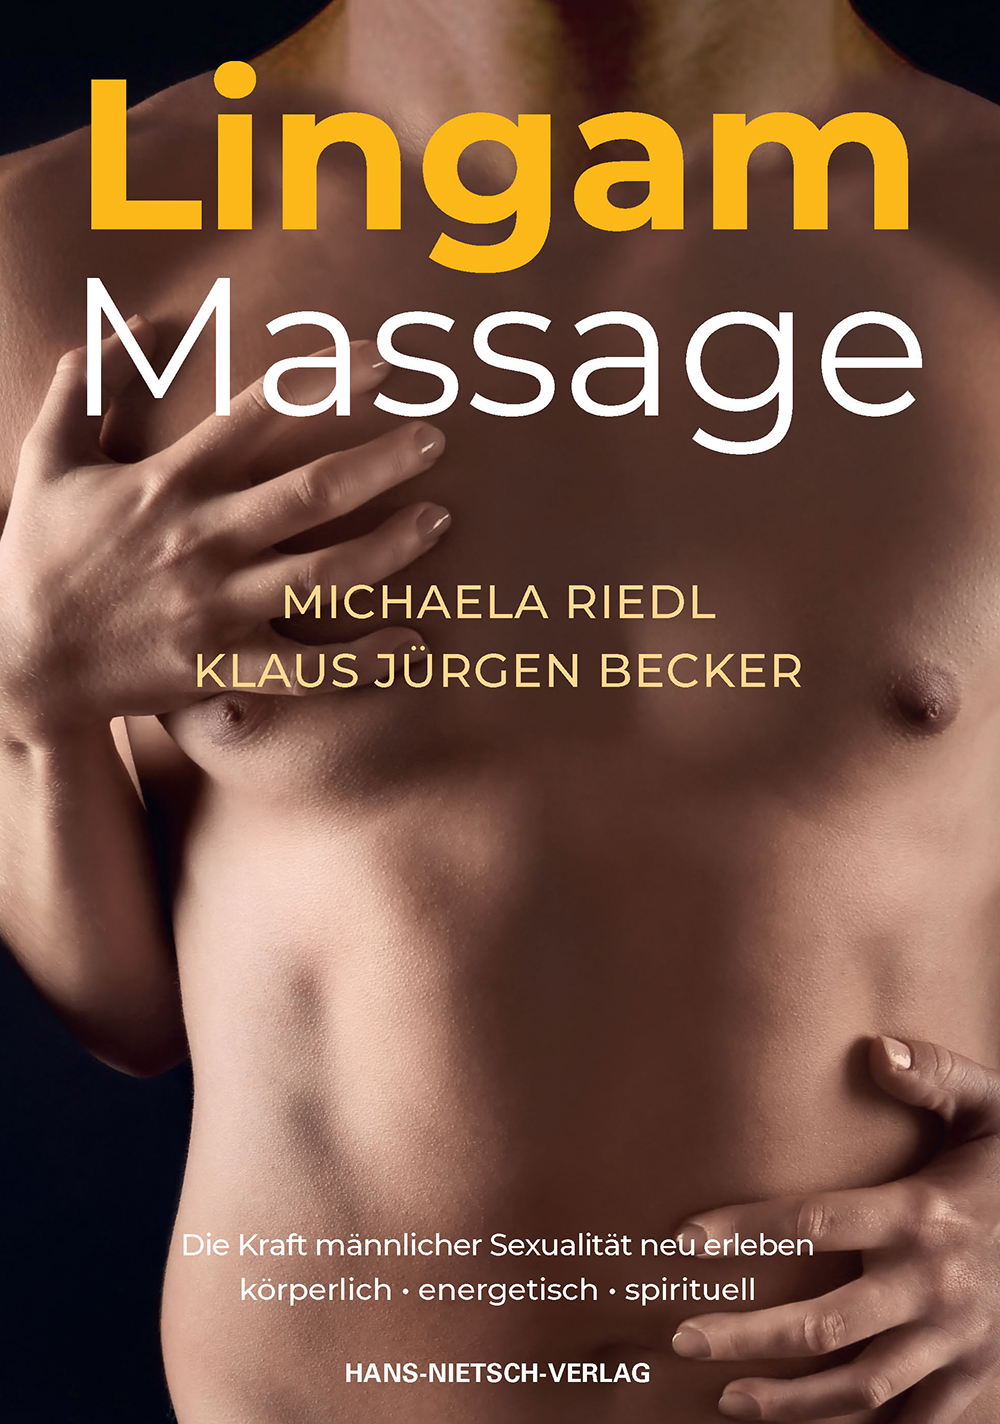 Anleitung lingam massage 